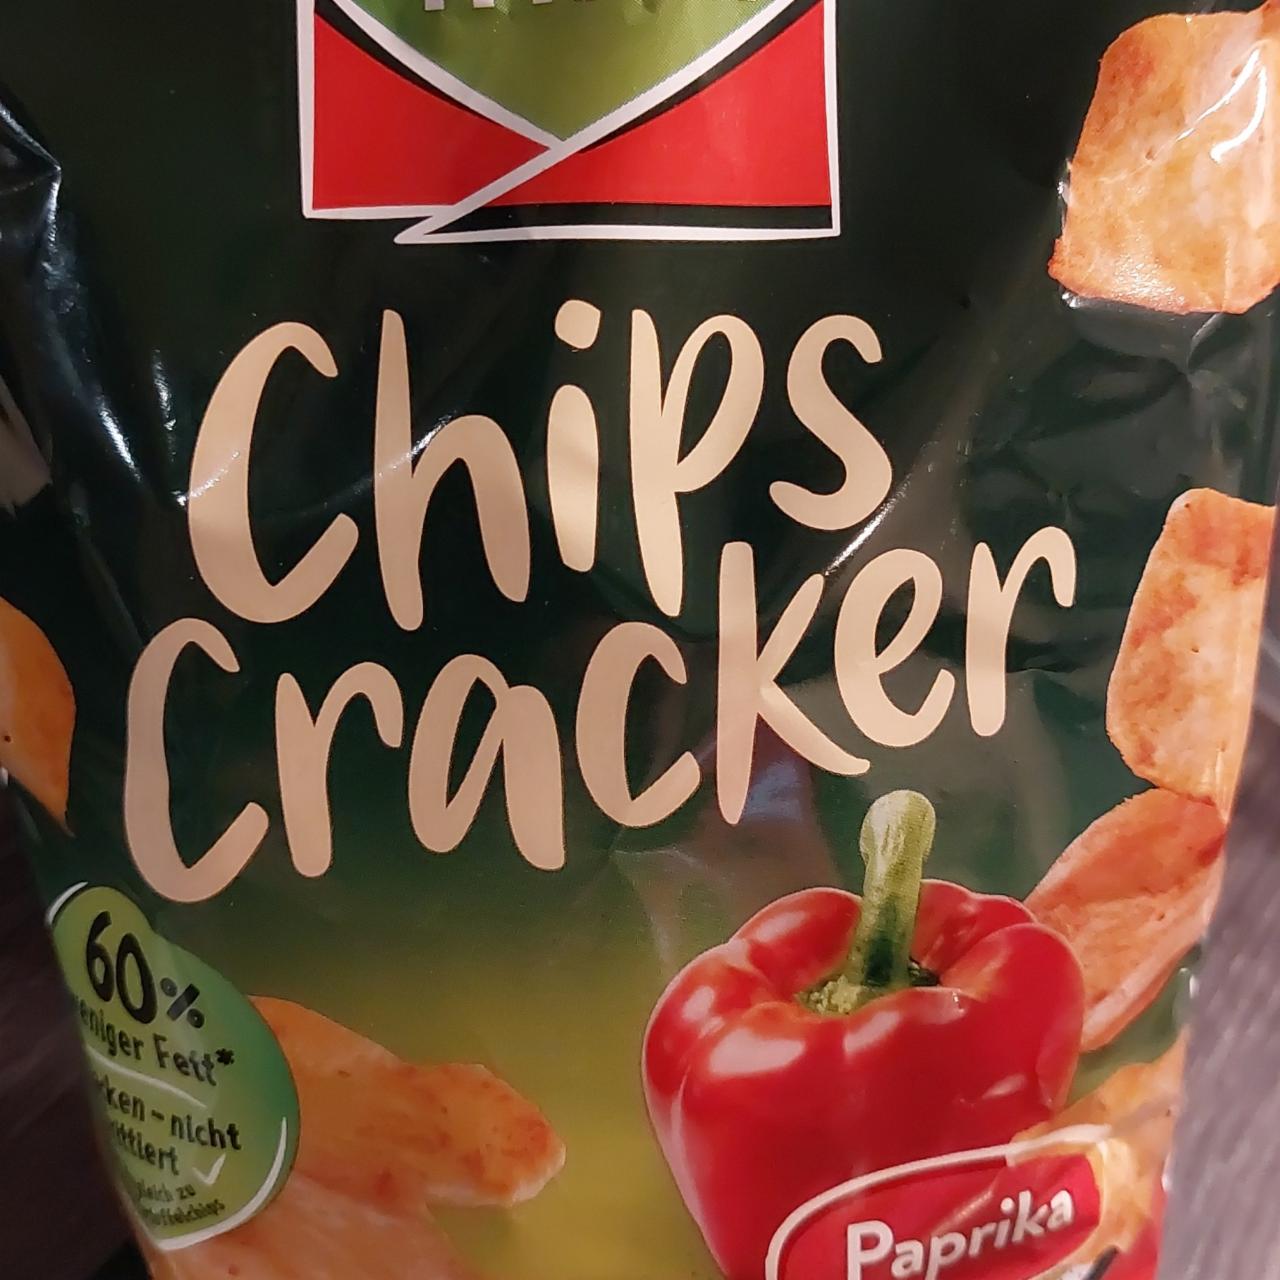 Fotografie - Chips Cracker Paprika Funny frisch